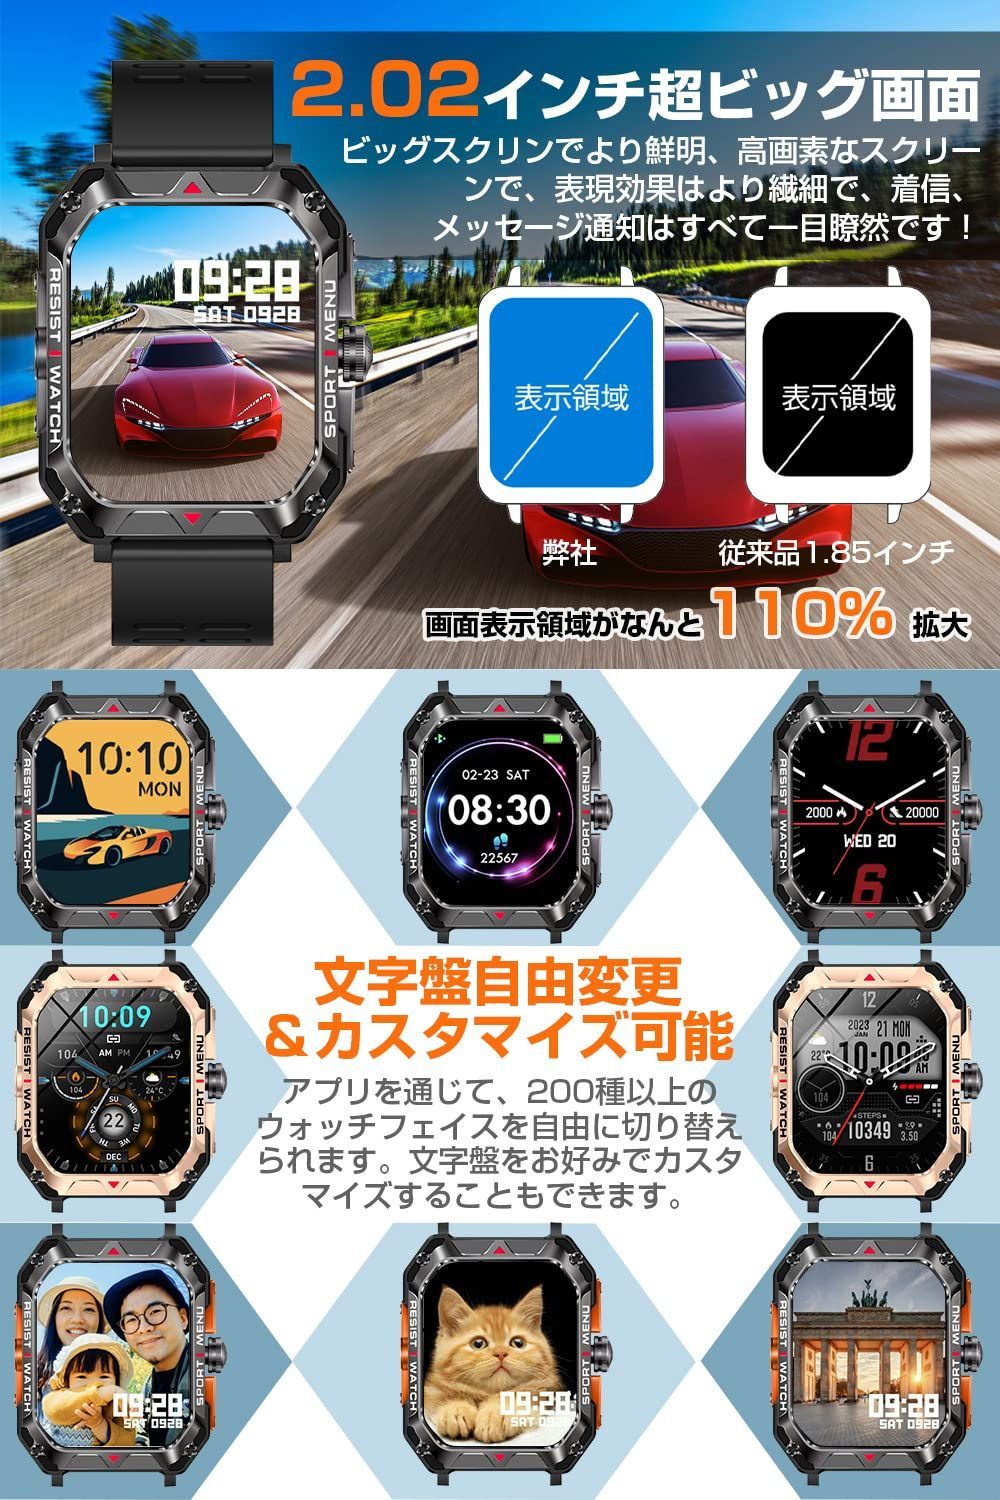 スマートウォッチ2.02インチ超大画面 通話機能付き smart watch - 6